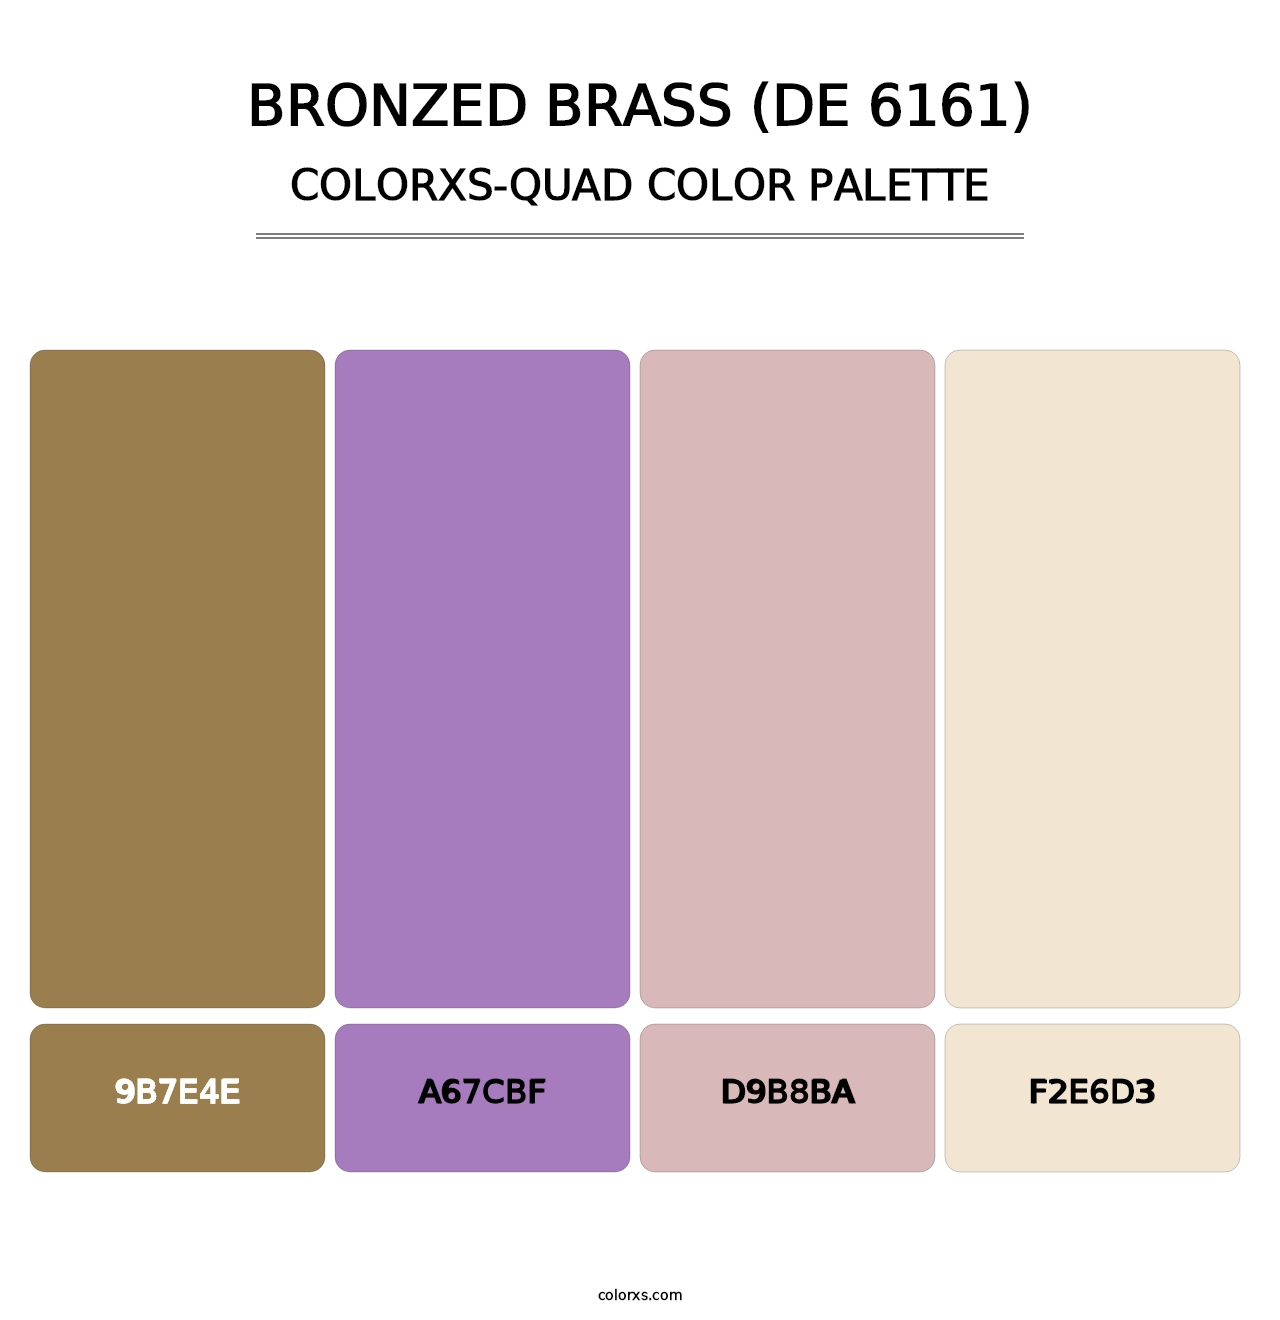 Bronzed Brass (DE 6161) - Colorxs Quad Palette